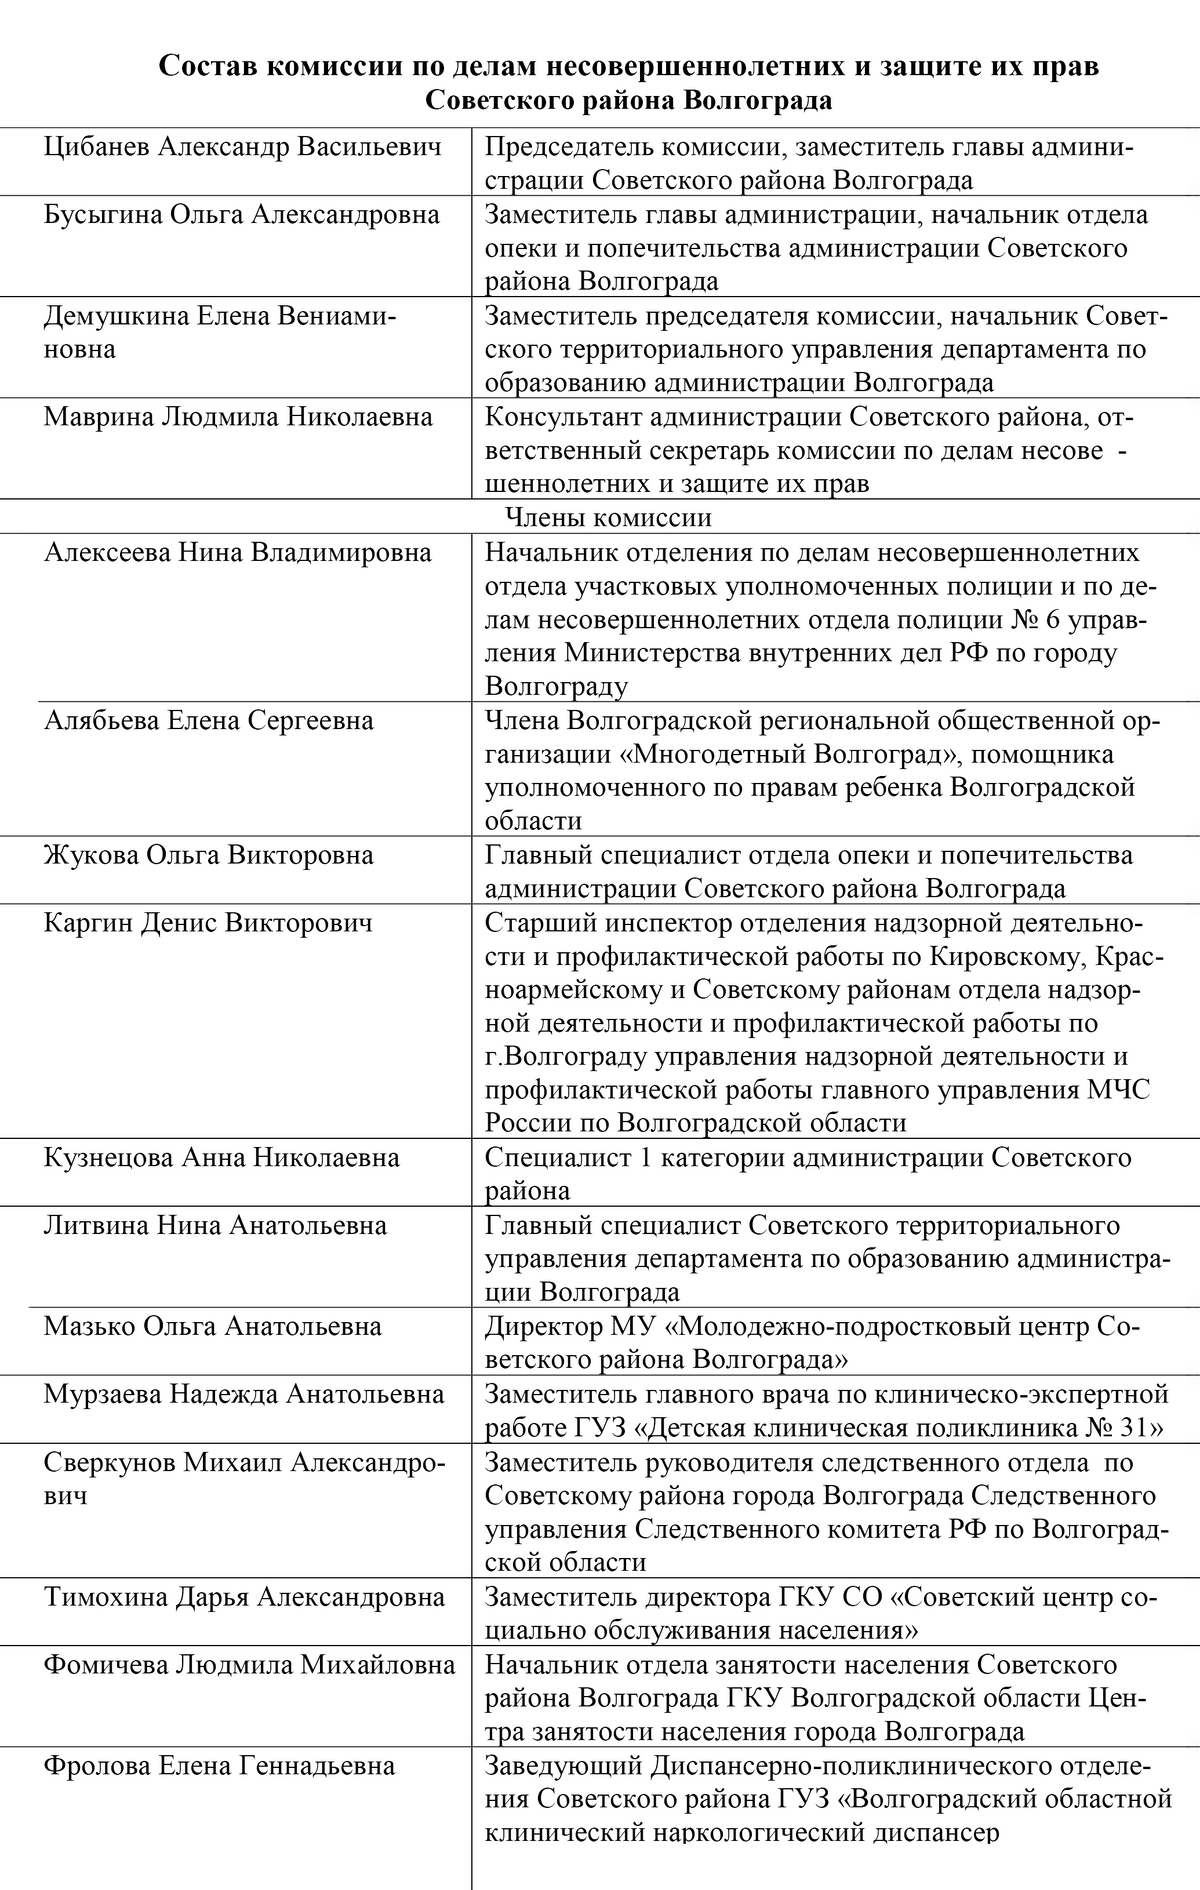 Вот для&nbsp;примера состав КДН одного из районов Волгограда — 16 человек. А в КДН Волгоградской области 22 человека